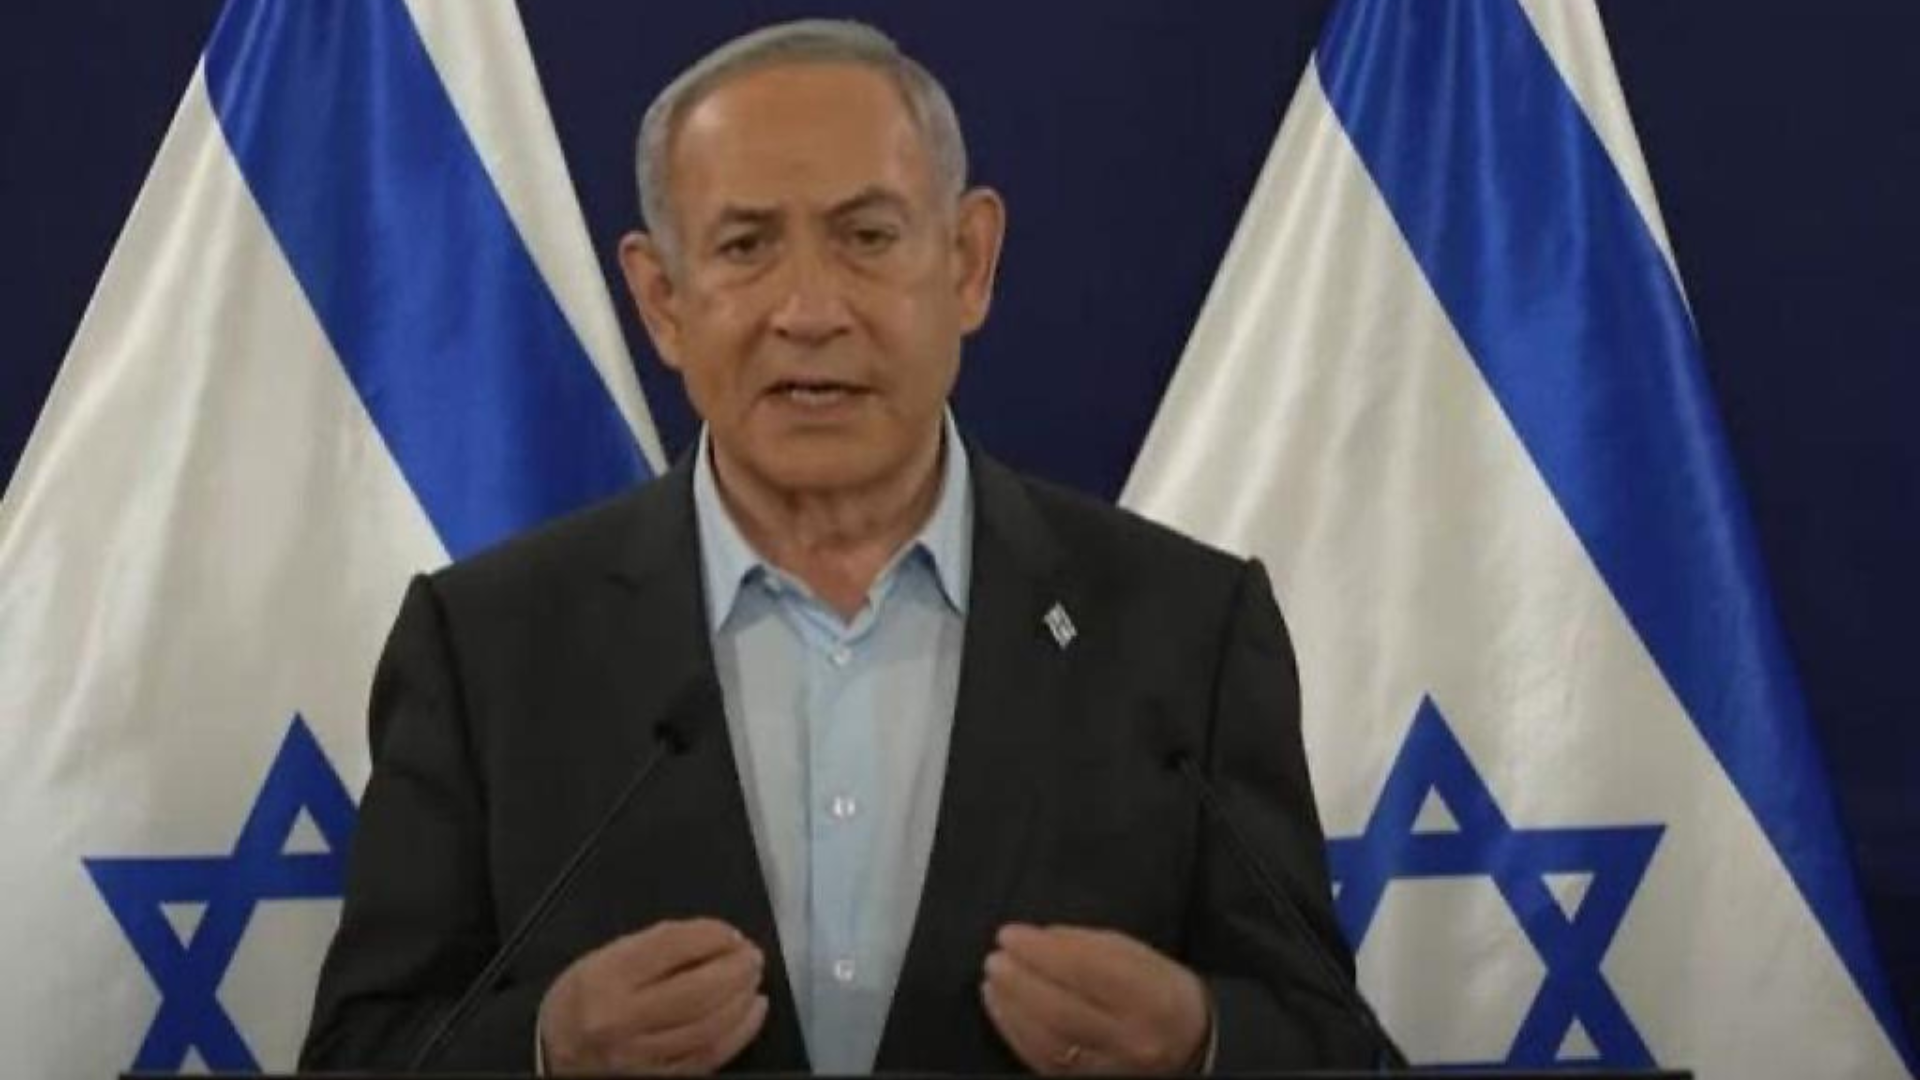 Israele, colloqui chiusi: Netanyahu porta i negoziati al punto di partenza